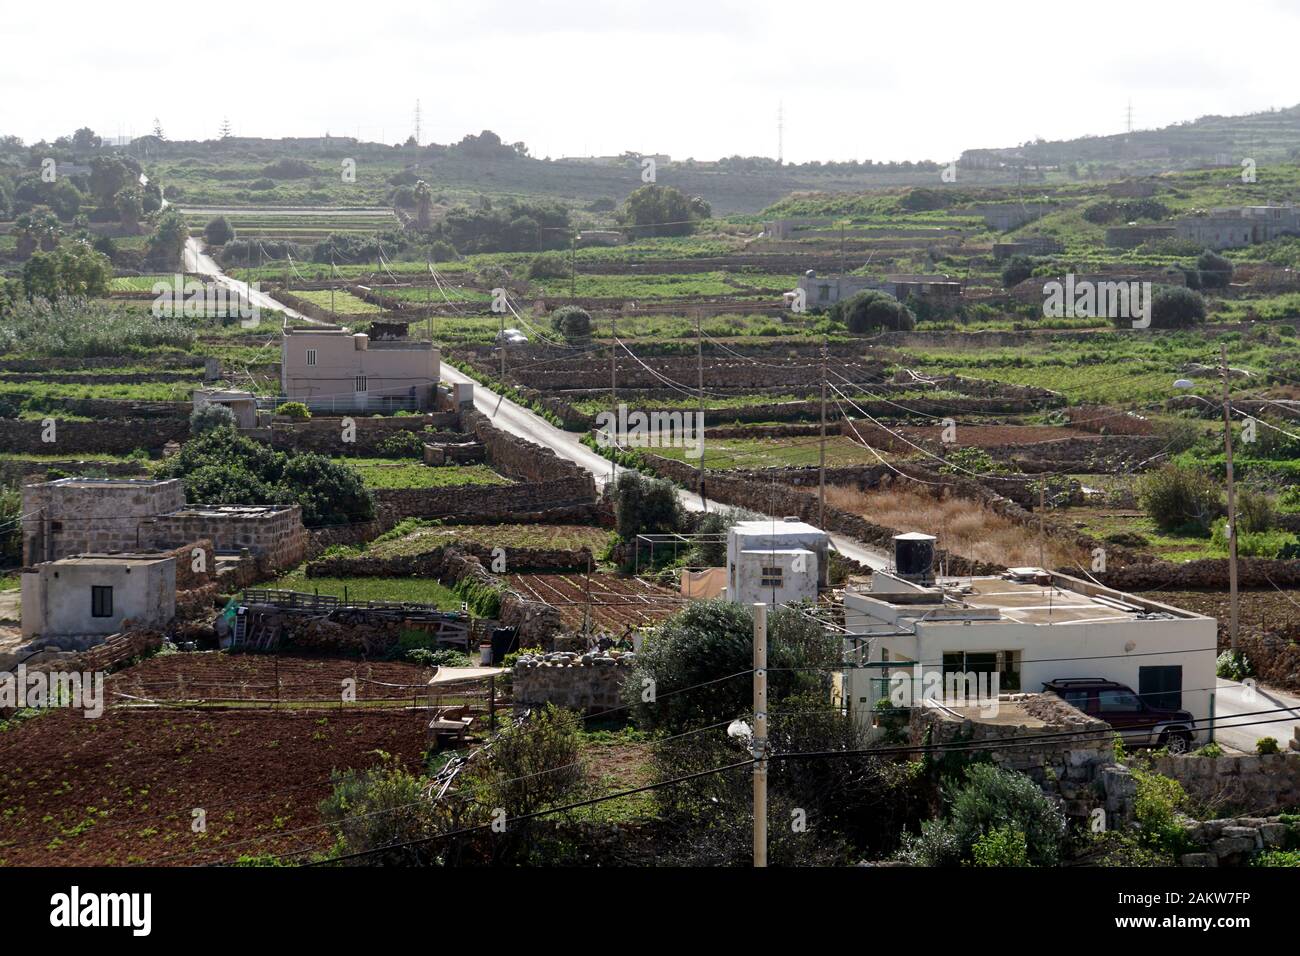 typische Agrarlandschaft mit Kleinfeldwirtschaft zwischen Kalkstein- Trockenmauern auf Malta , Mellieha, Malta Stock Photo